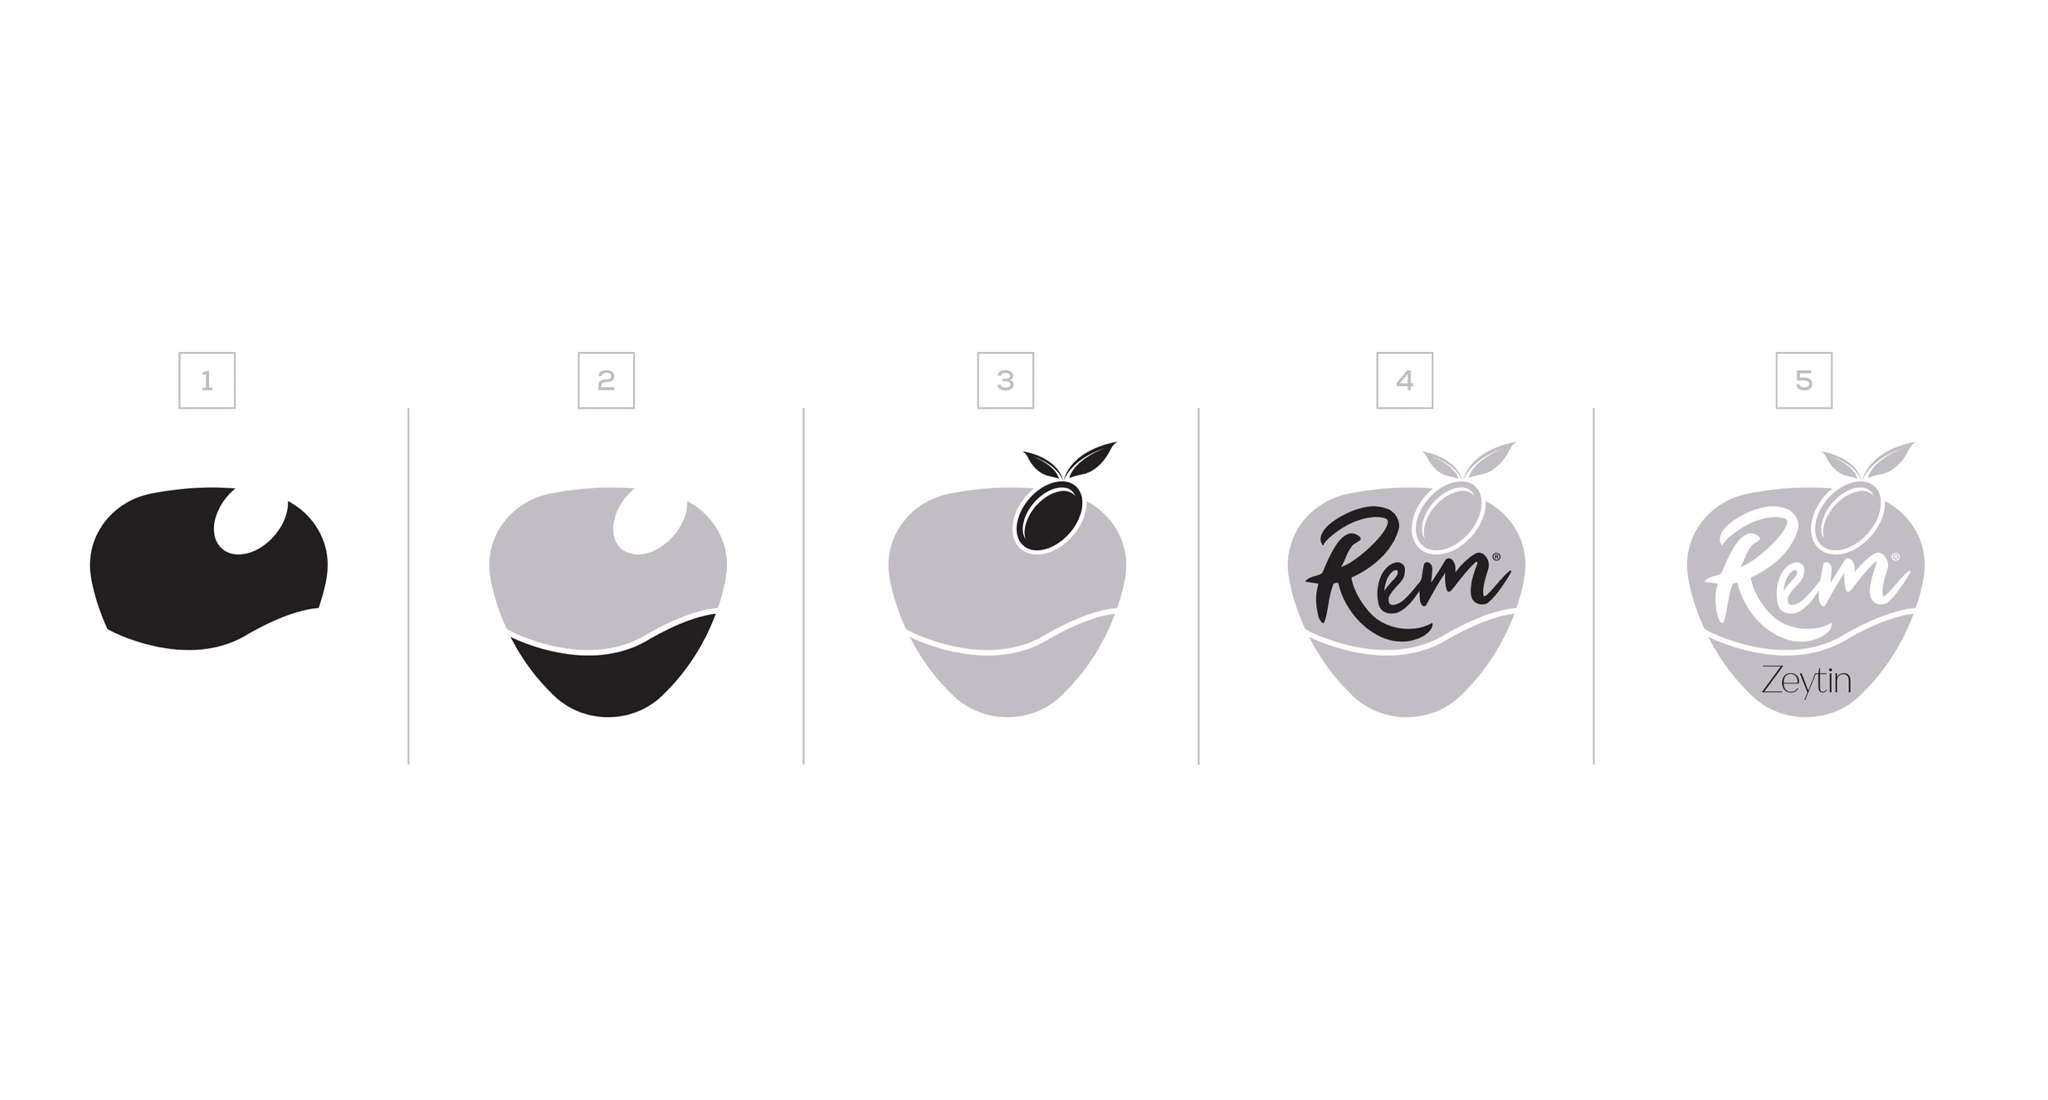 rem zeytin logo süreci